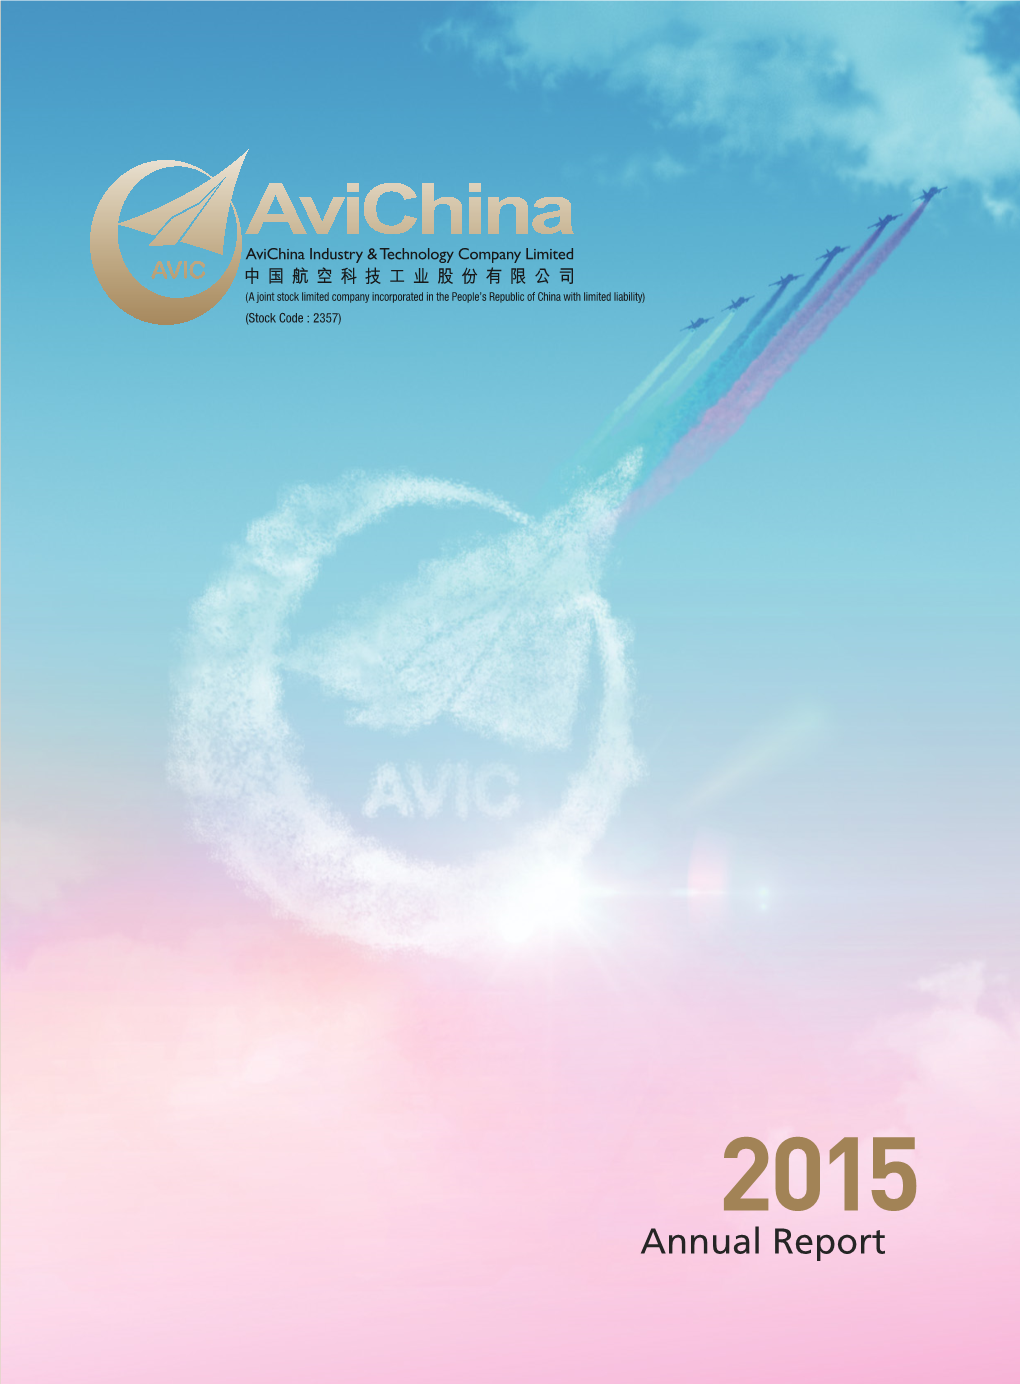 ANNUAL REPORT 2015 2015 2015 年報 Annual Report 年報 Contents